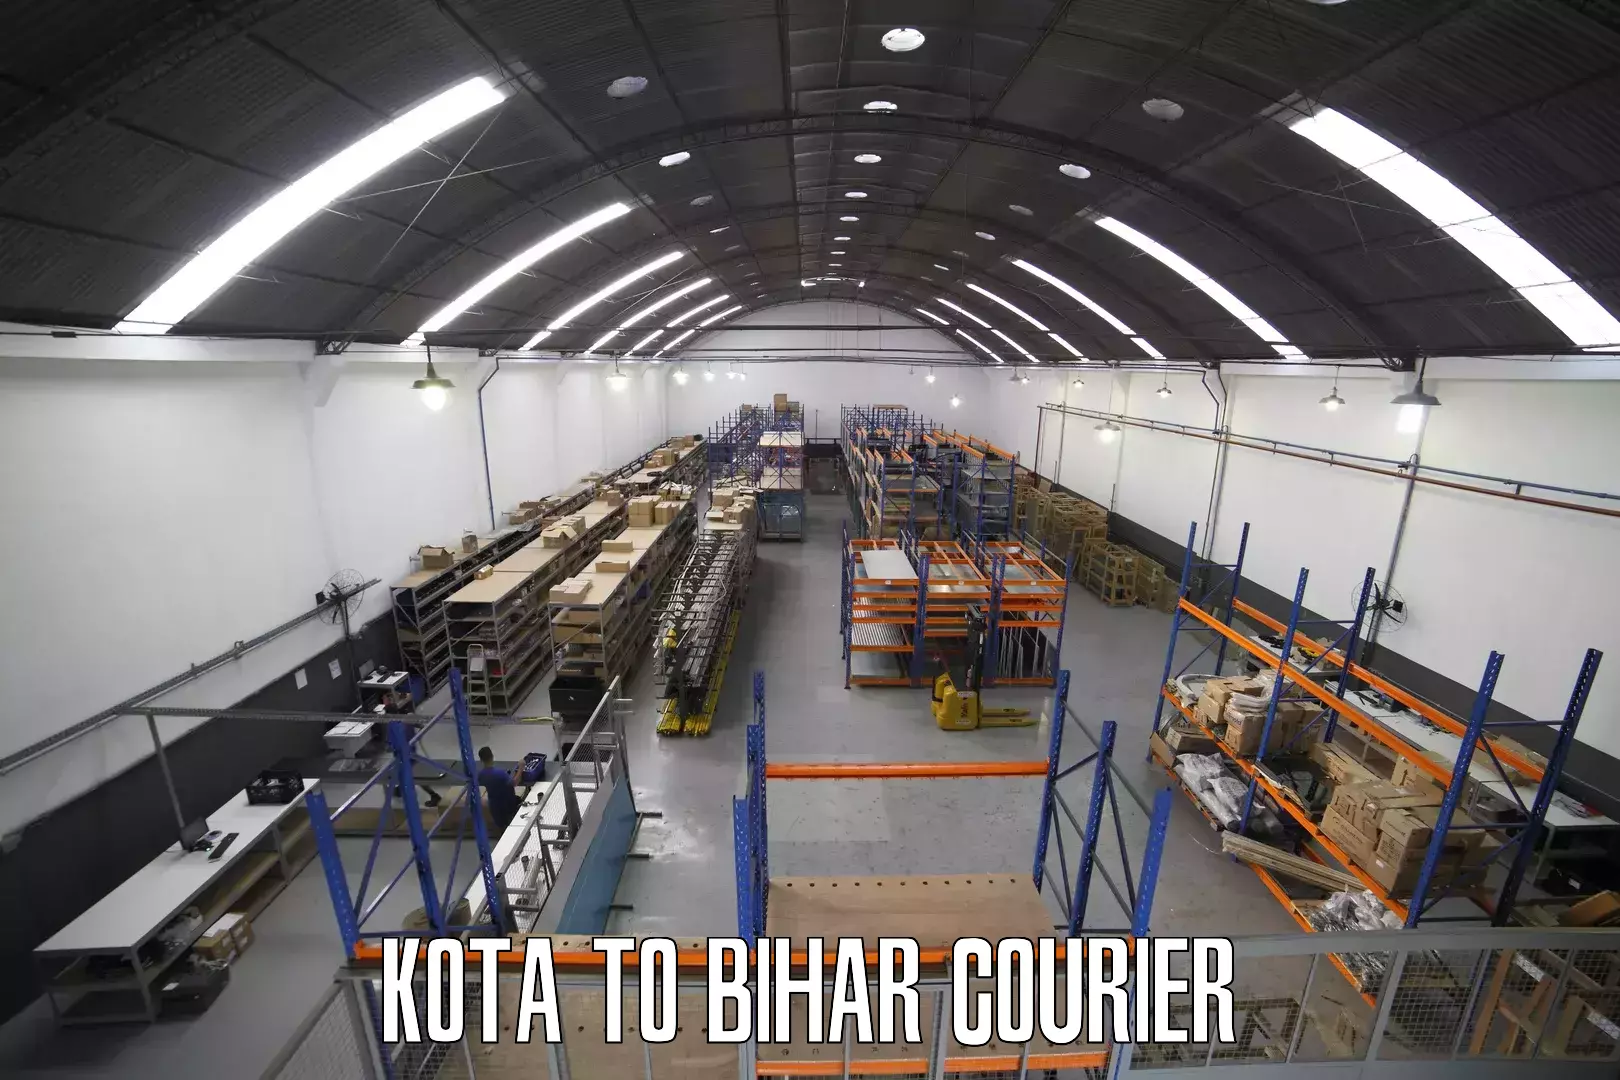 Tech-enabled shipping Kota to Bihar